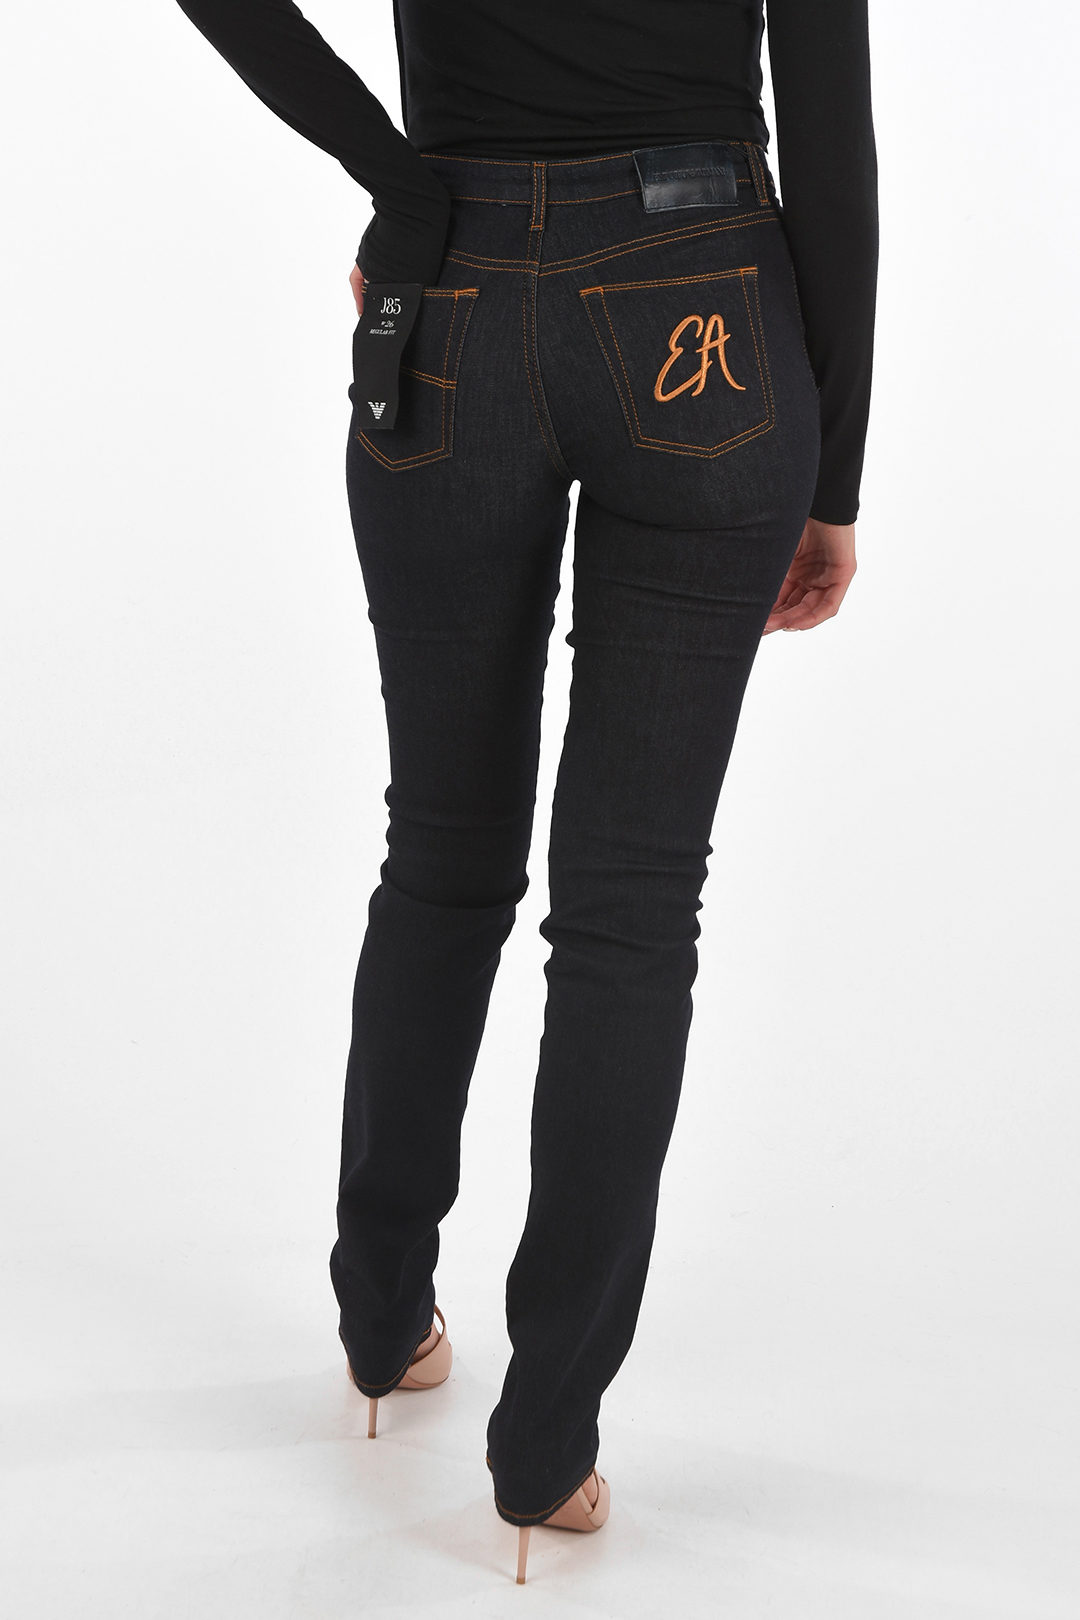 tildeling Kanin instinkt Armani EMPORIO Regular Fit J85 Jeans women - Glamood Outlet